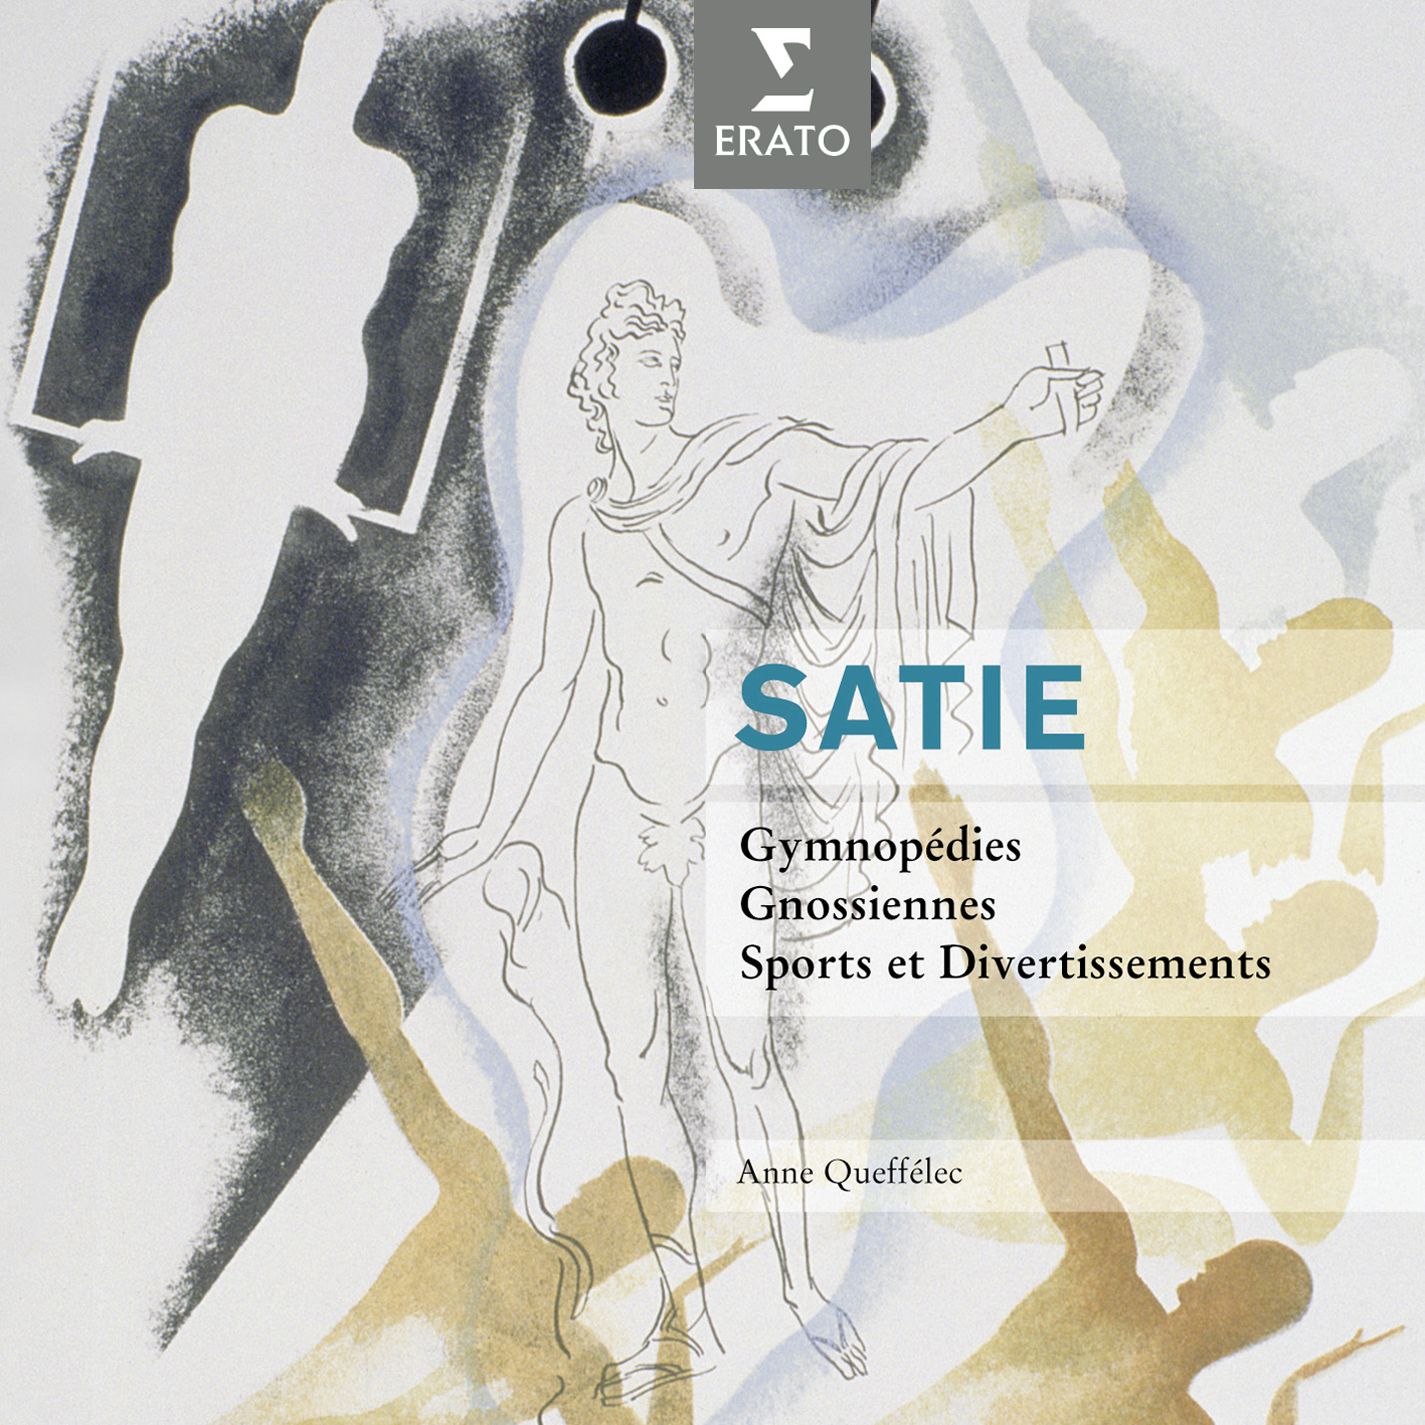 Satie: Gymnope dies, Gnossiennes, Sports et Divertissements